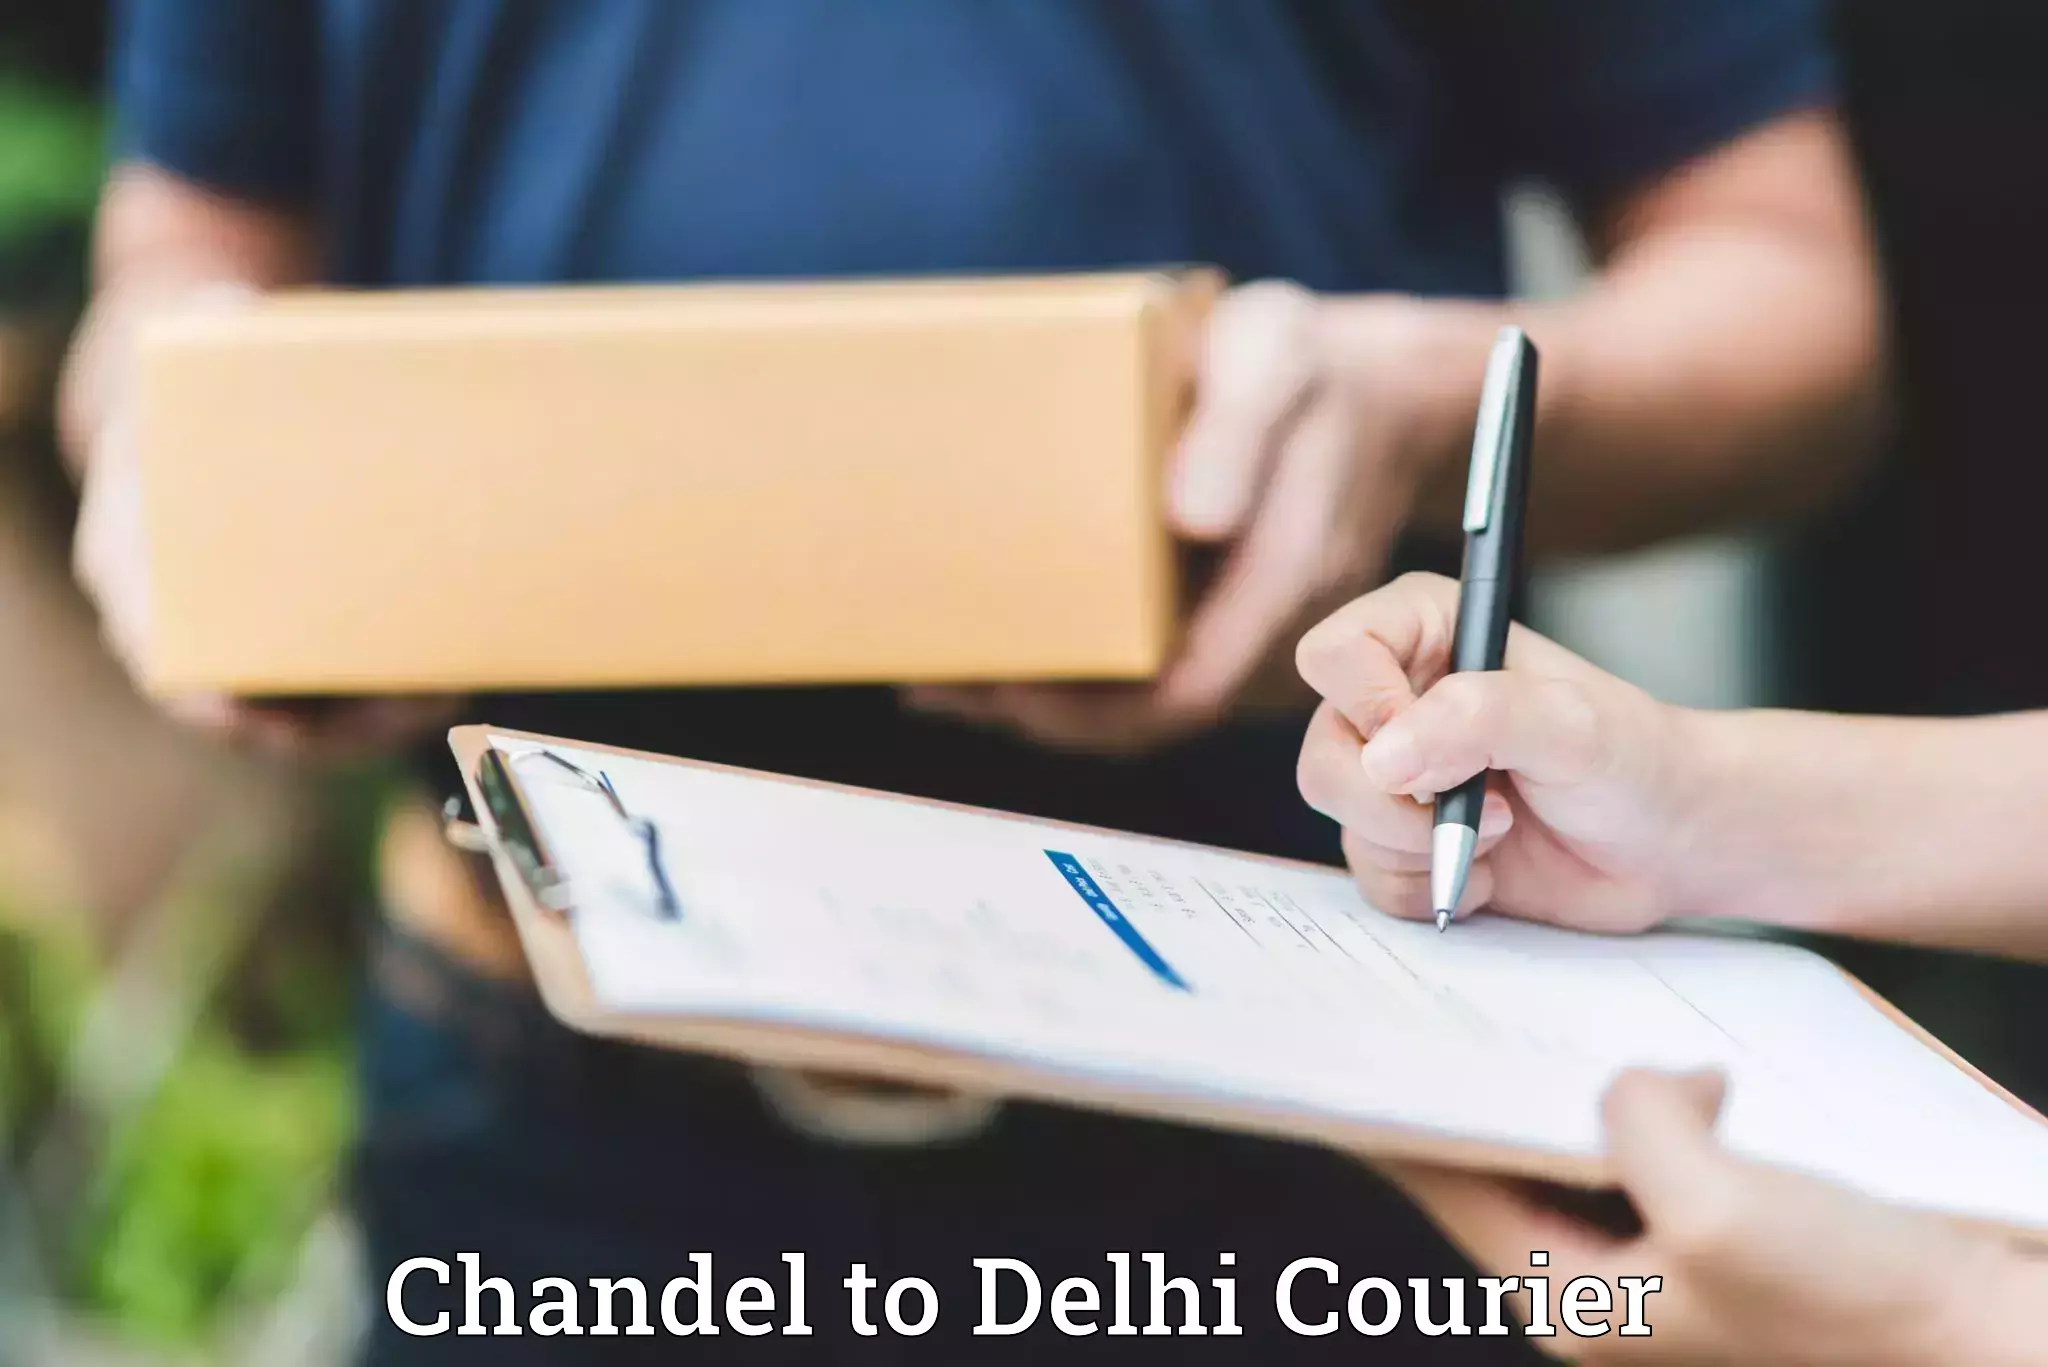 Door-to-door baggage service Chandel to Delhi